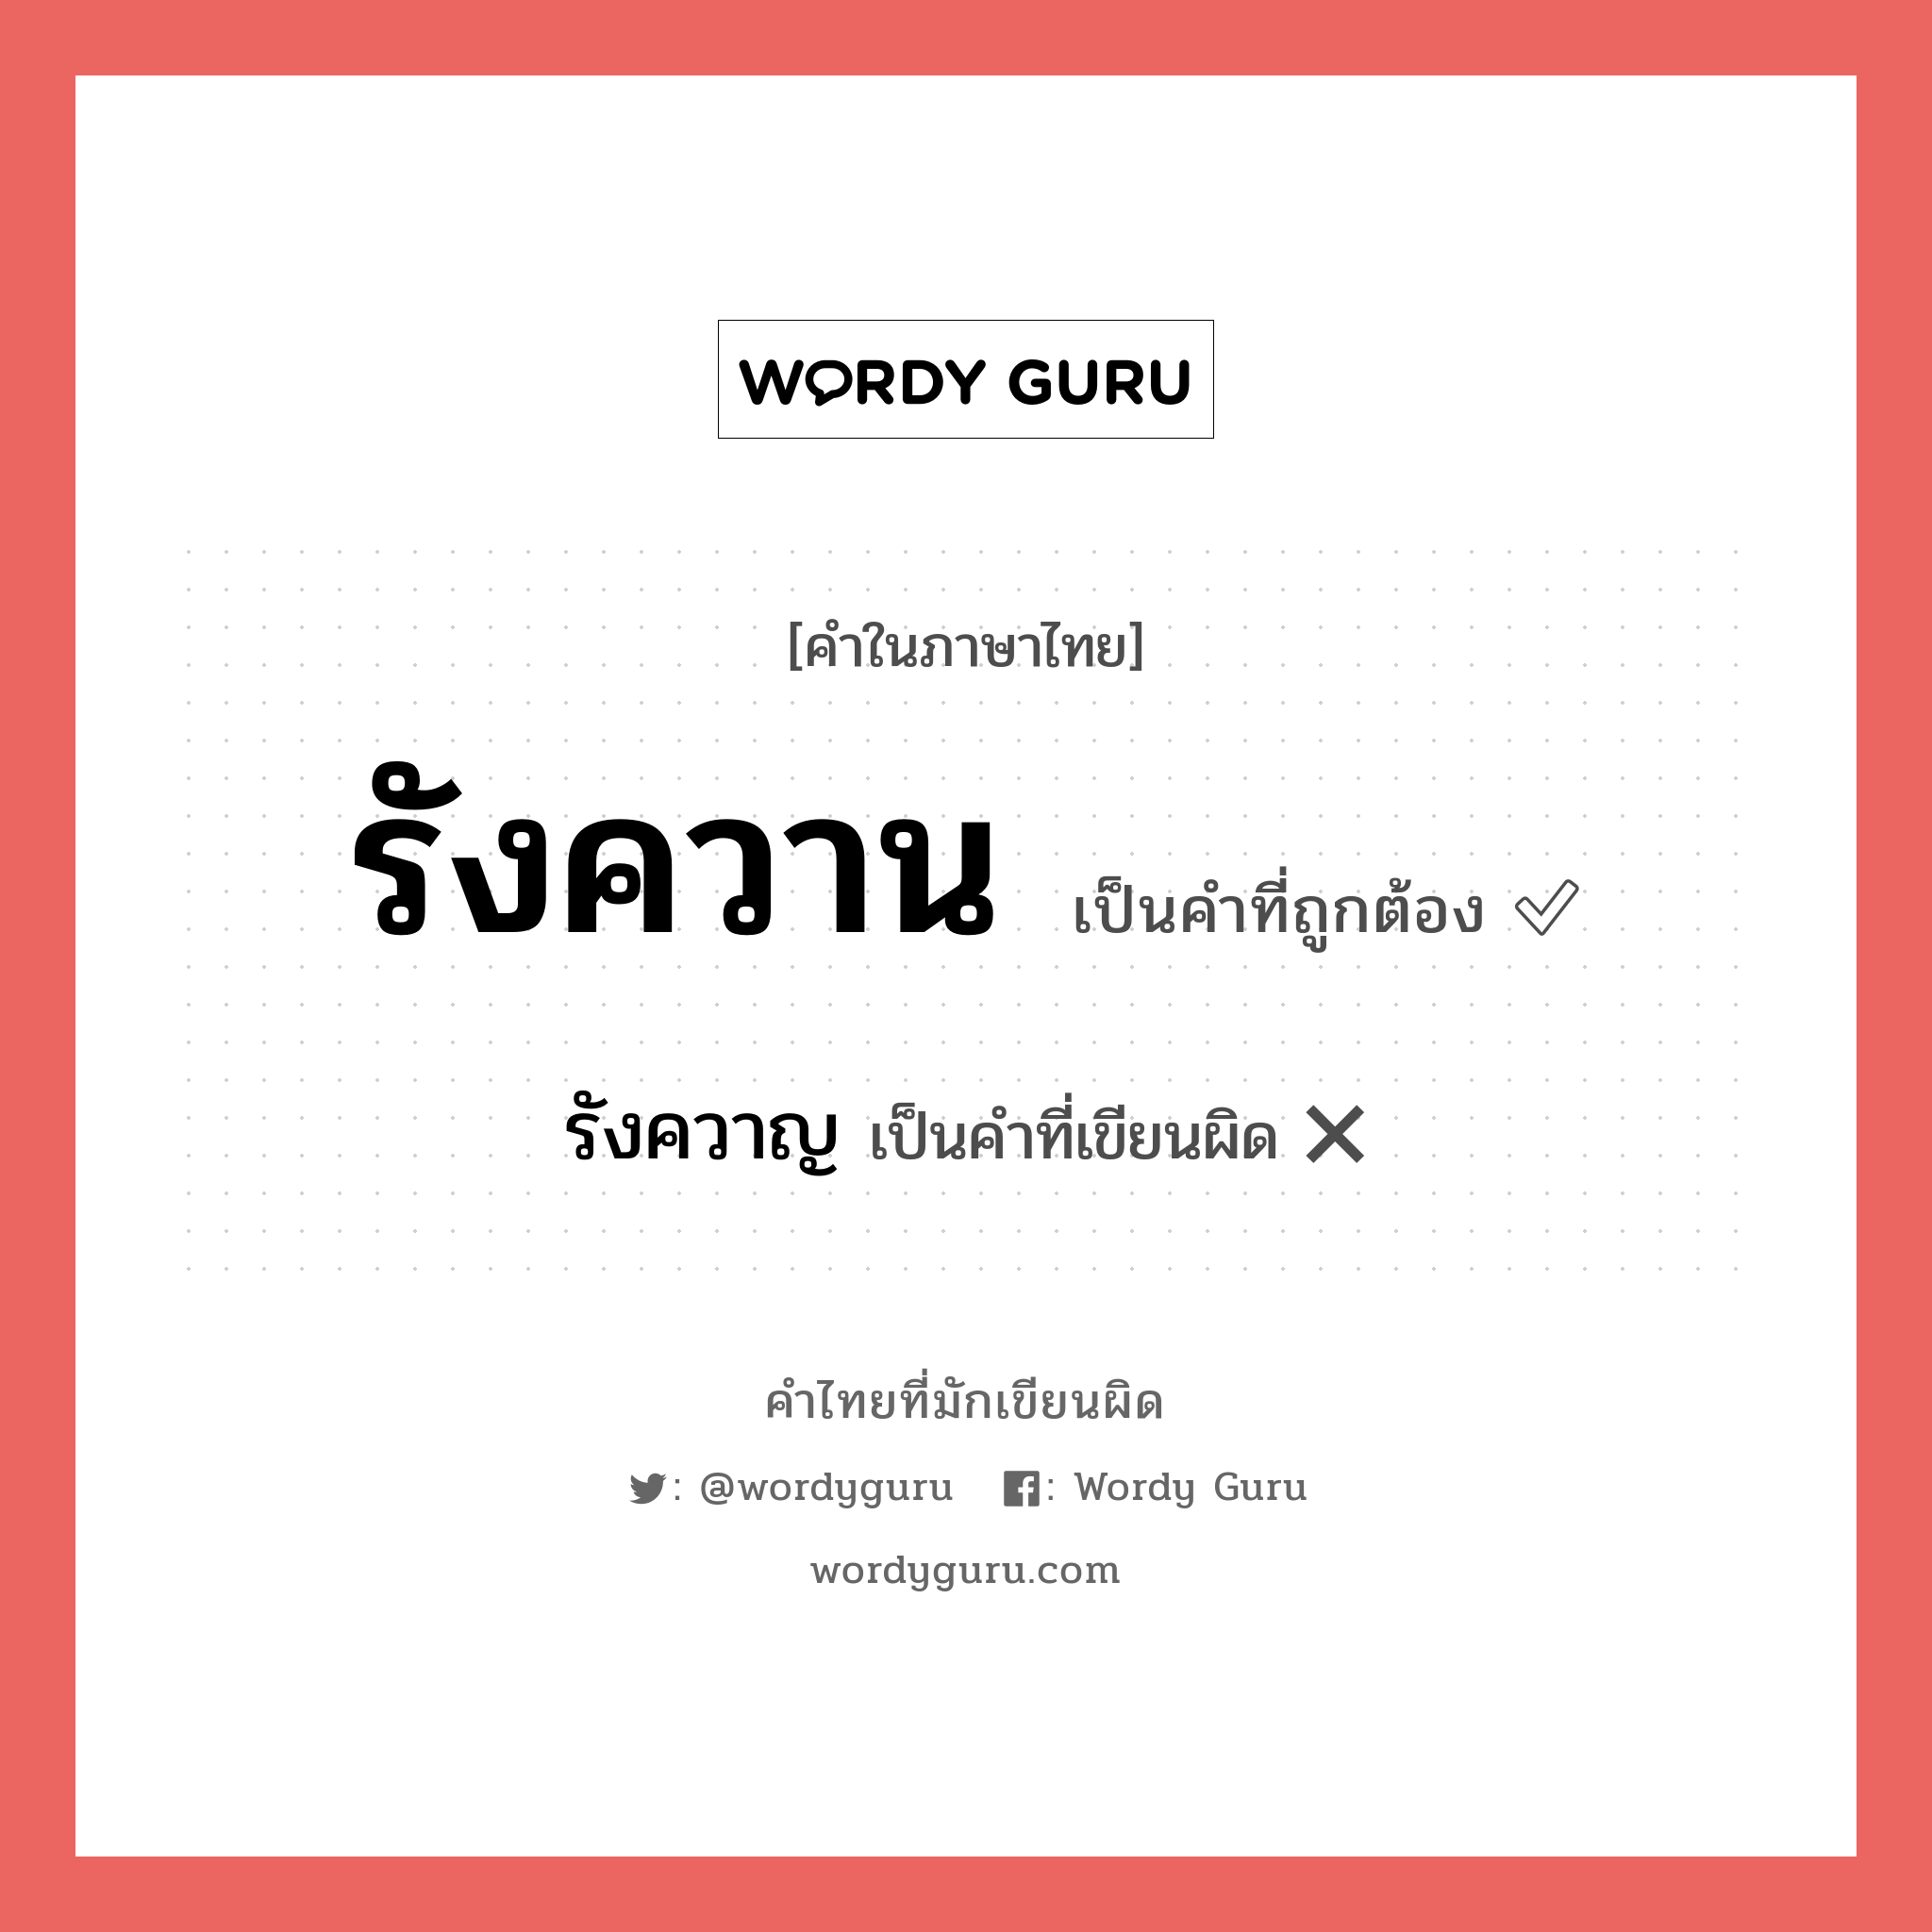 รังควาน หรือ รังควาญ คำไหนเขียนถูก?, คำในภาษาไทยที่มักเขียนผิด รังควาน คำที่ผิด ❌ รังควาญ